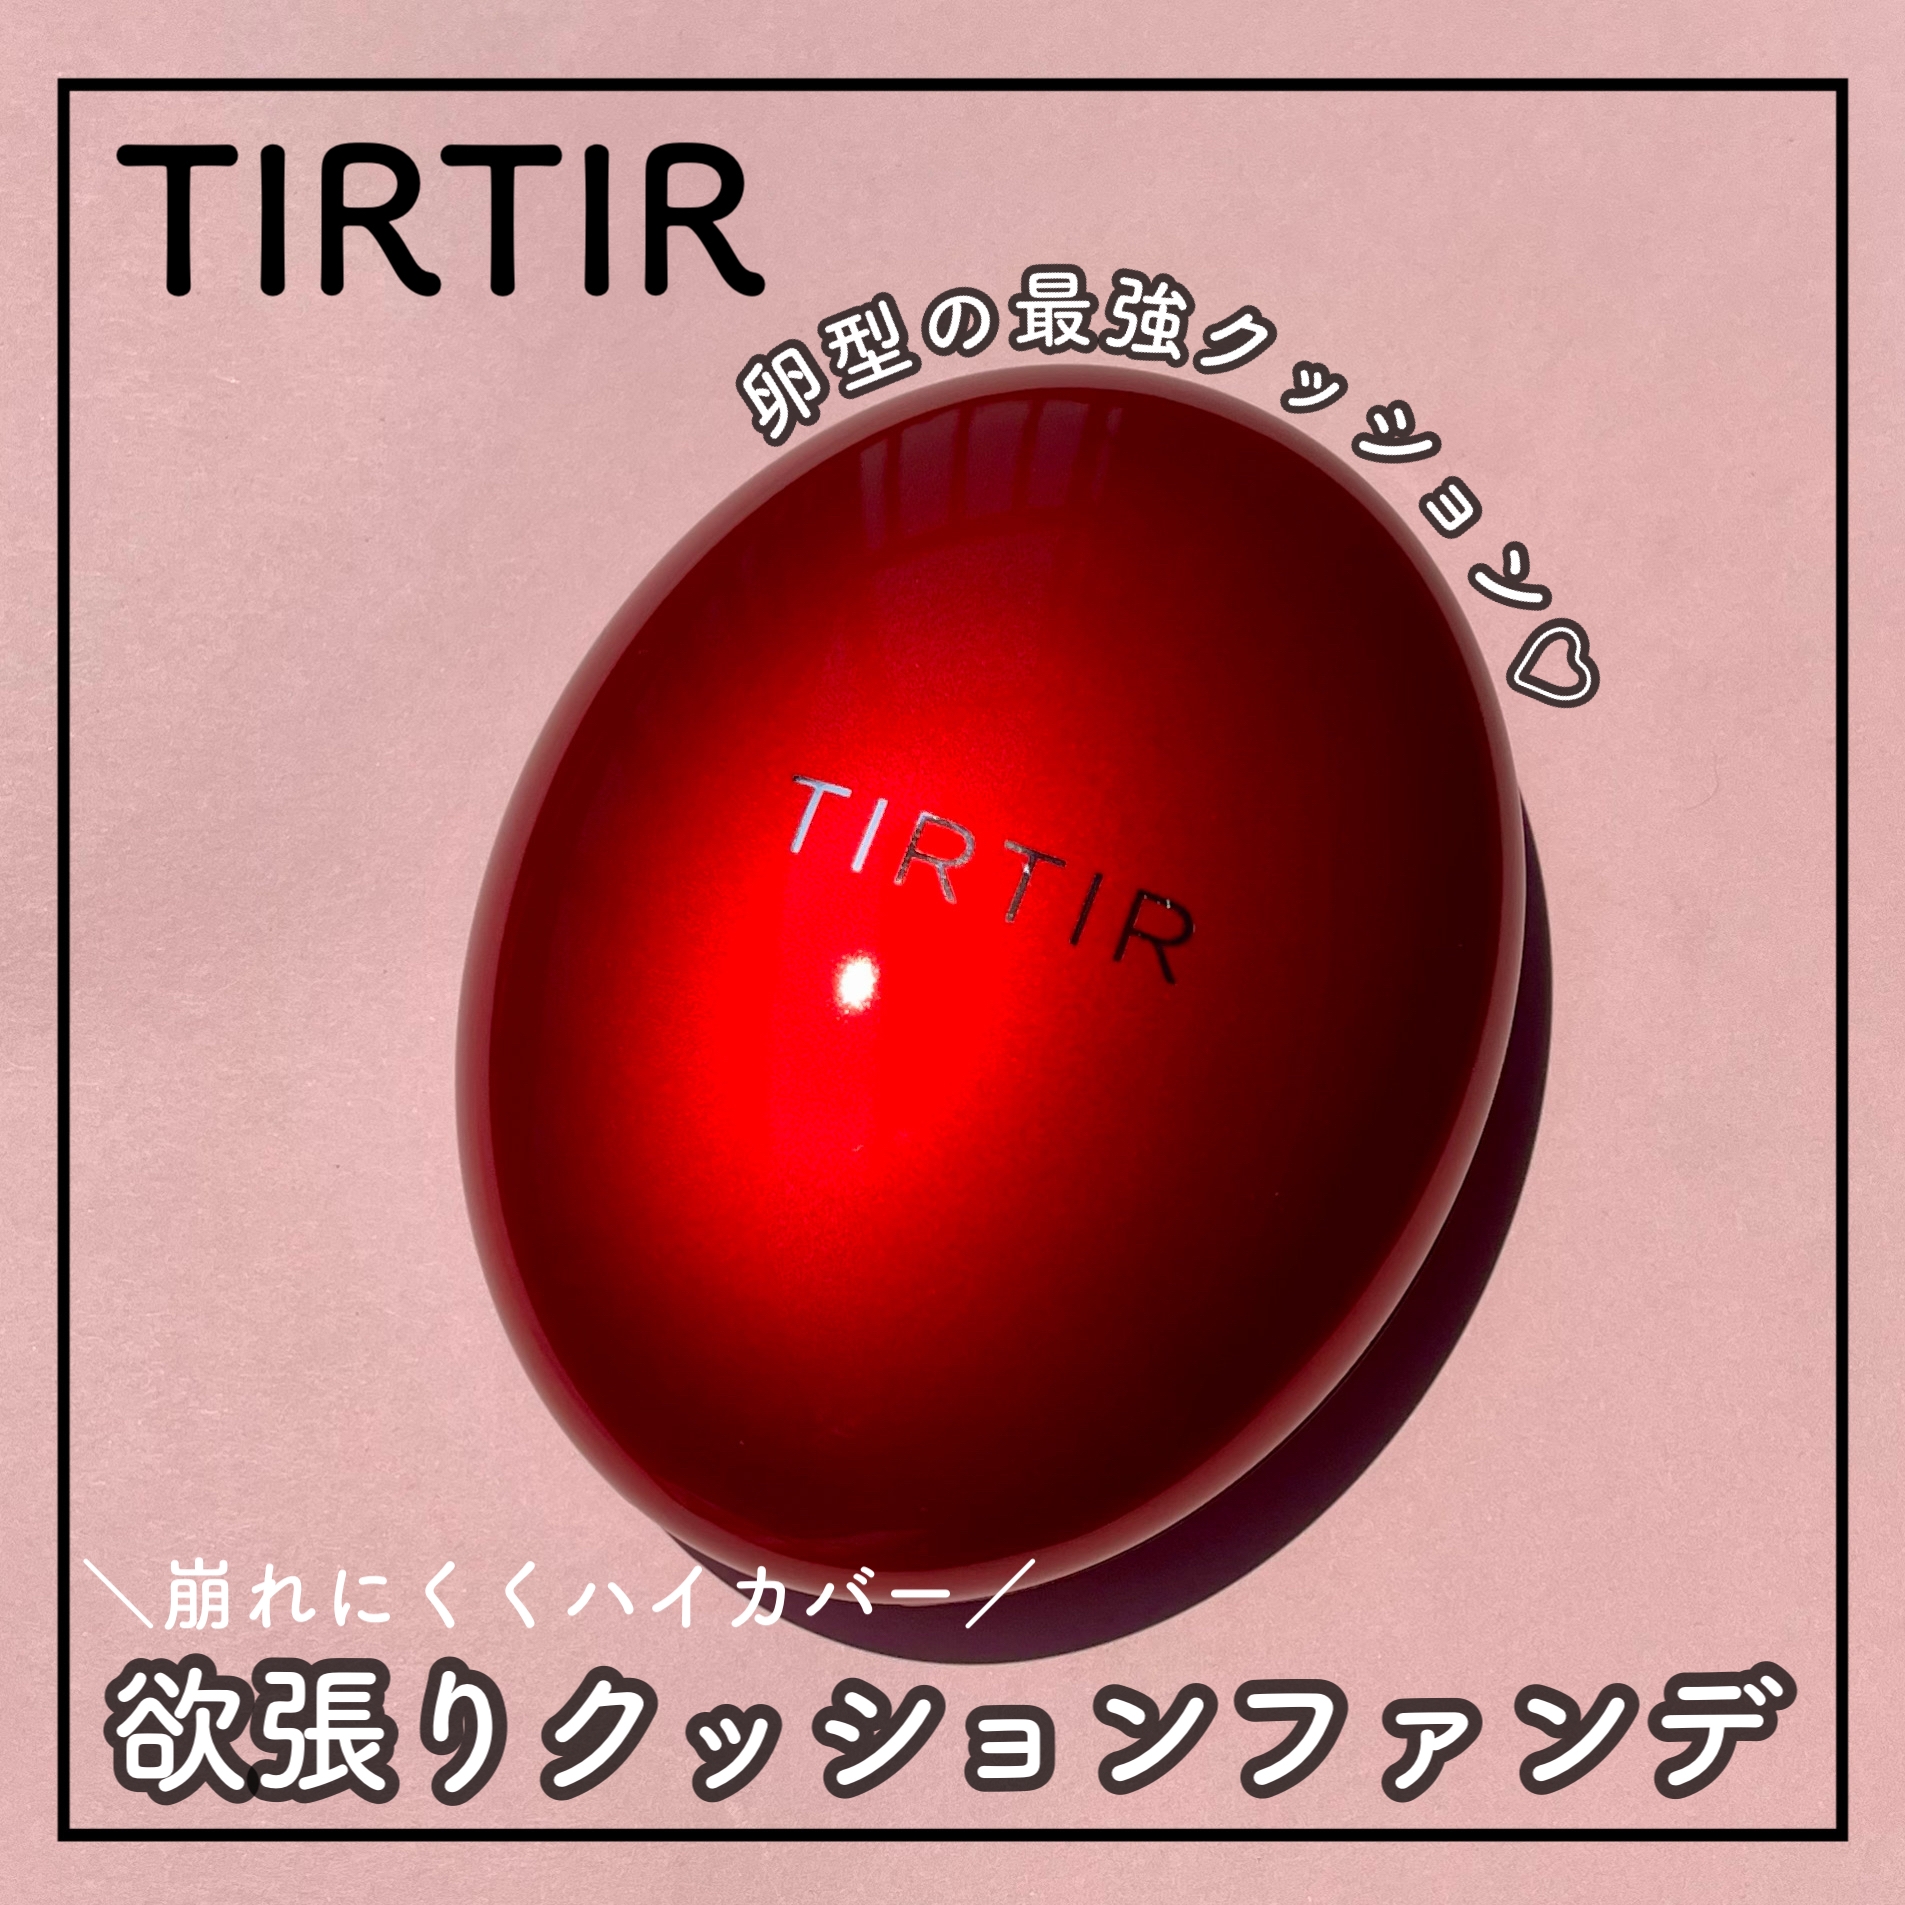 TIRTIR(ティルティル) マスク フィット レッド クッションの良い点・メリットに関するsachikoさんの口コミ画像3